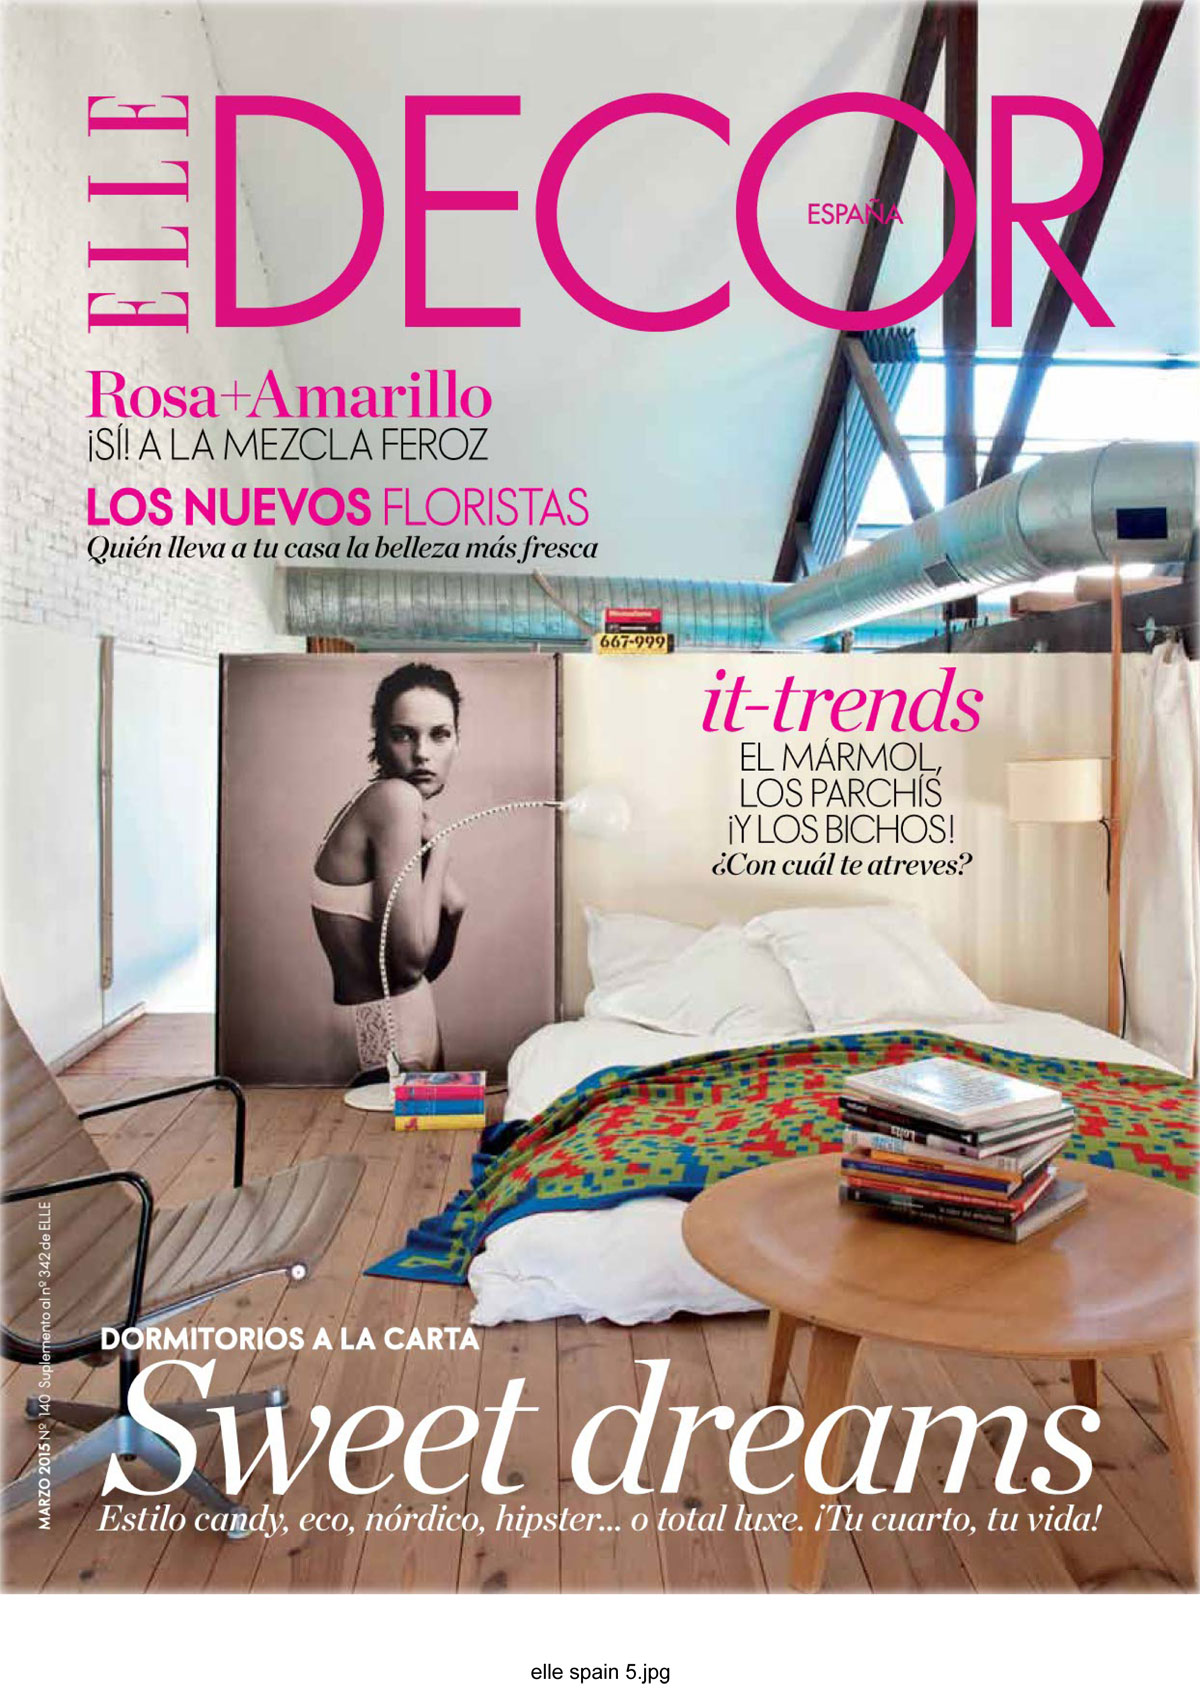 Elle Decor Spain 2015 4